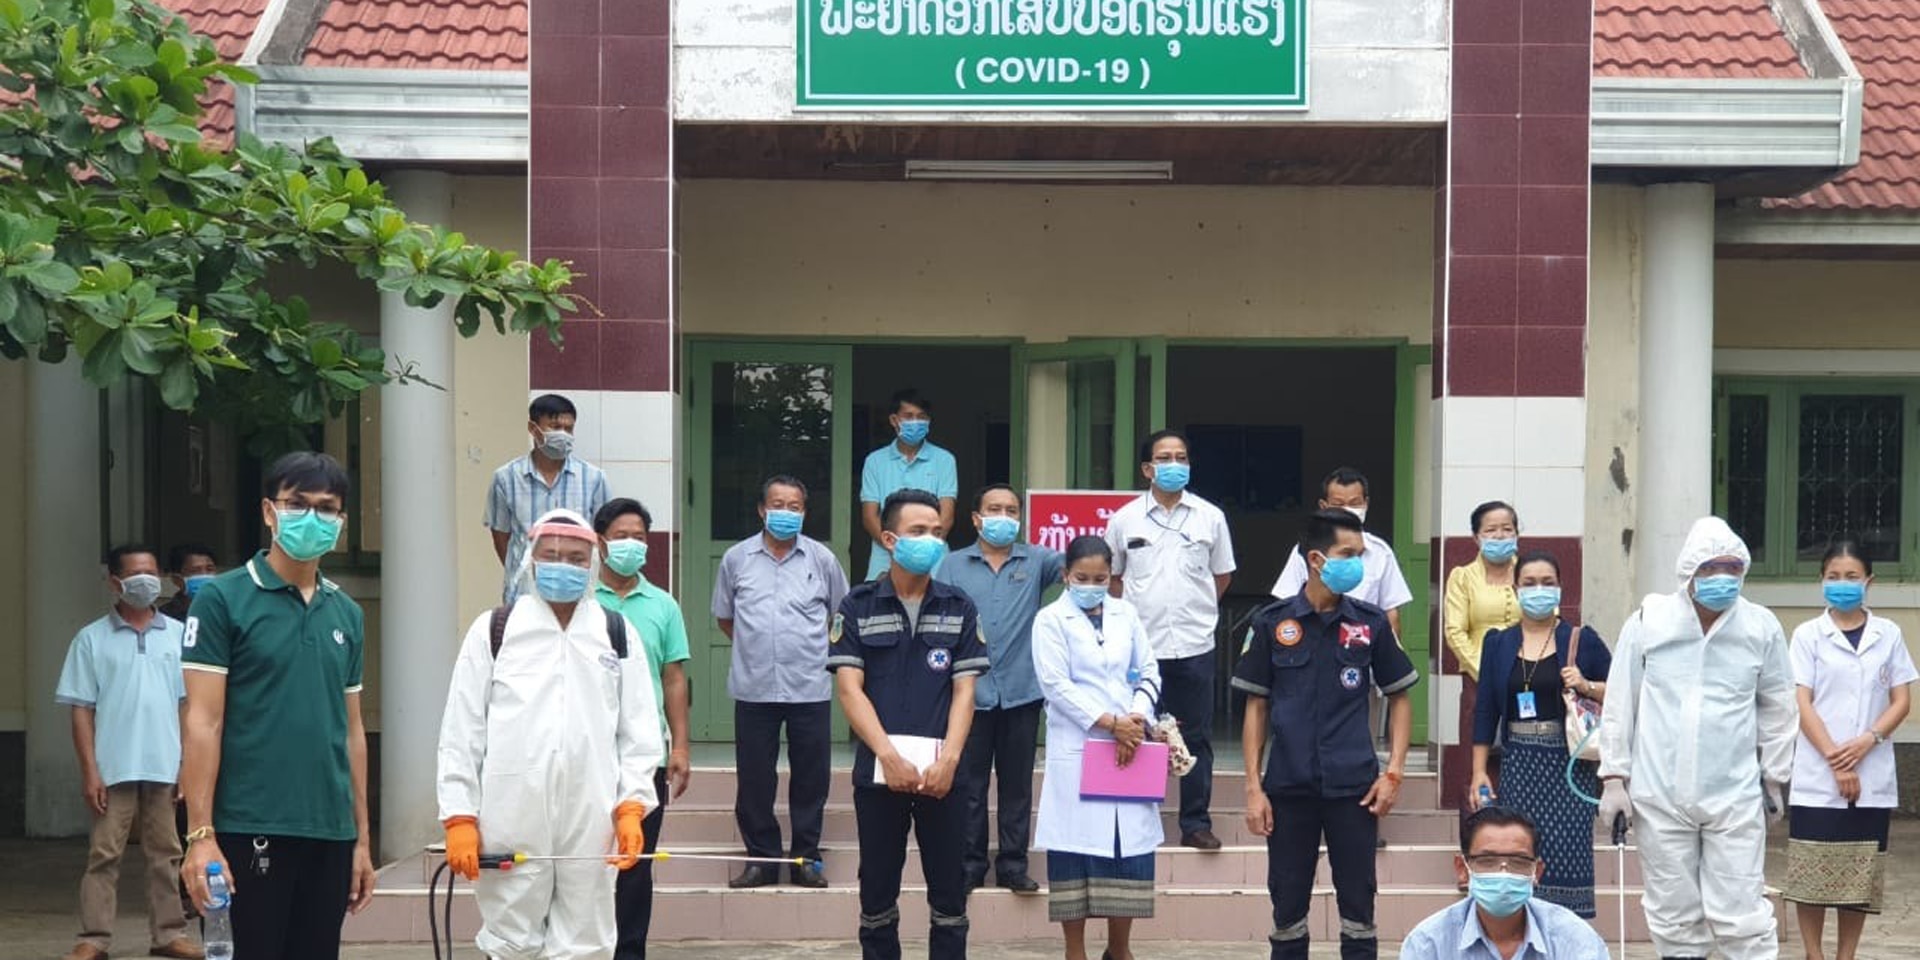 Le personnel d’un hôpital du Laos équipé de masques de protection devant l’entrée de l’unité dédiée au COVID-19. 